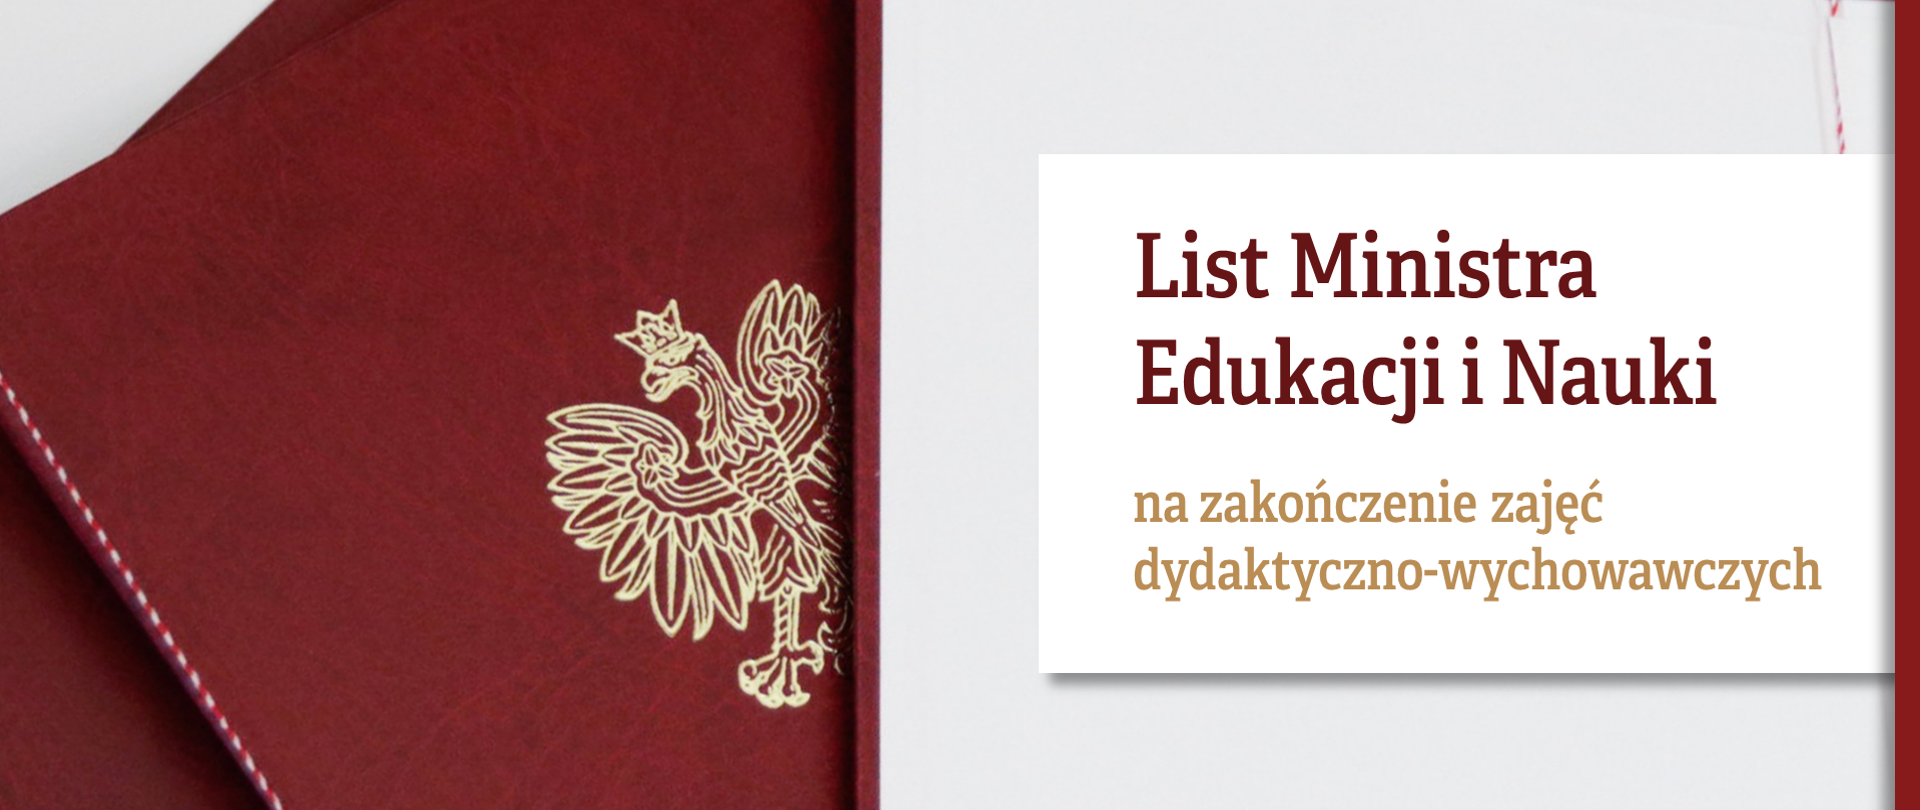 Grafika z tekstem: "List Ministra Edukacji i Nauki na zakończenie zajęć dydaktyczno-wychowawczych"